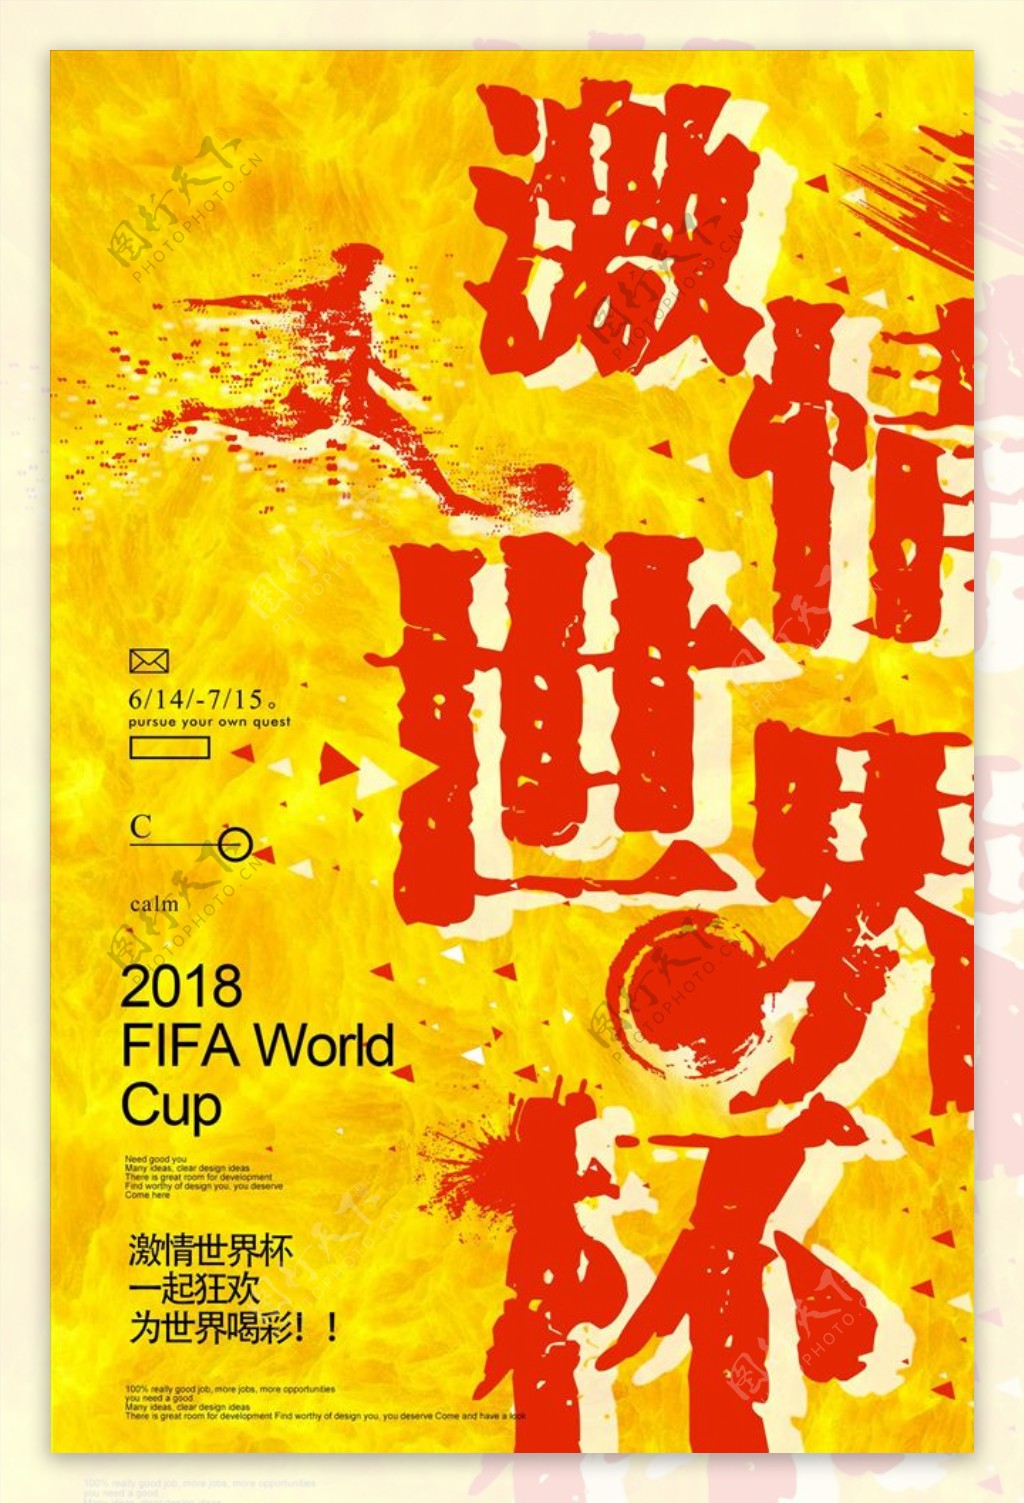 创意夏日激情世界杯足球海报